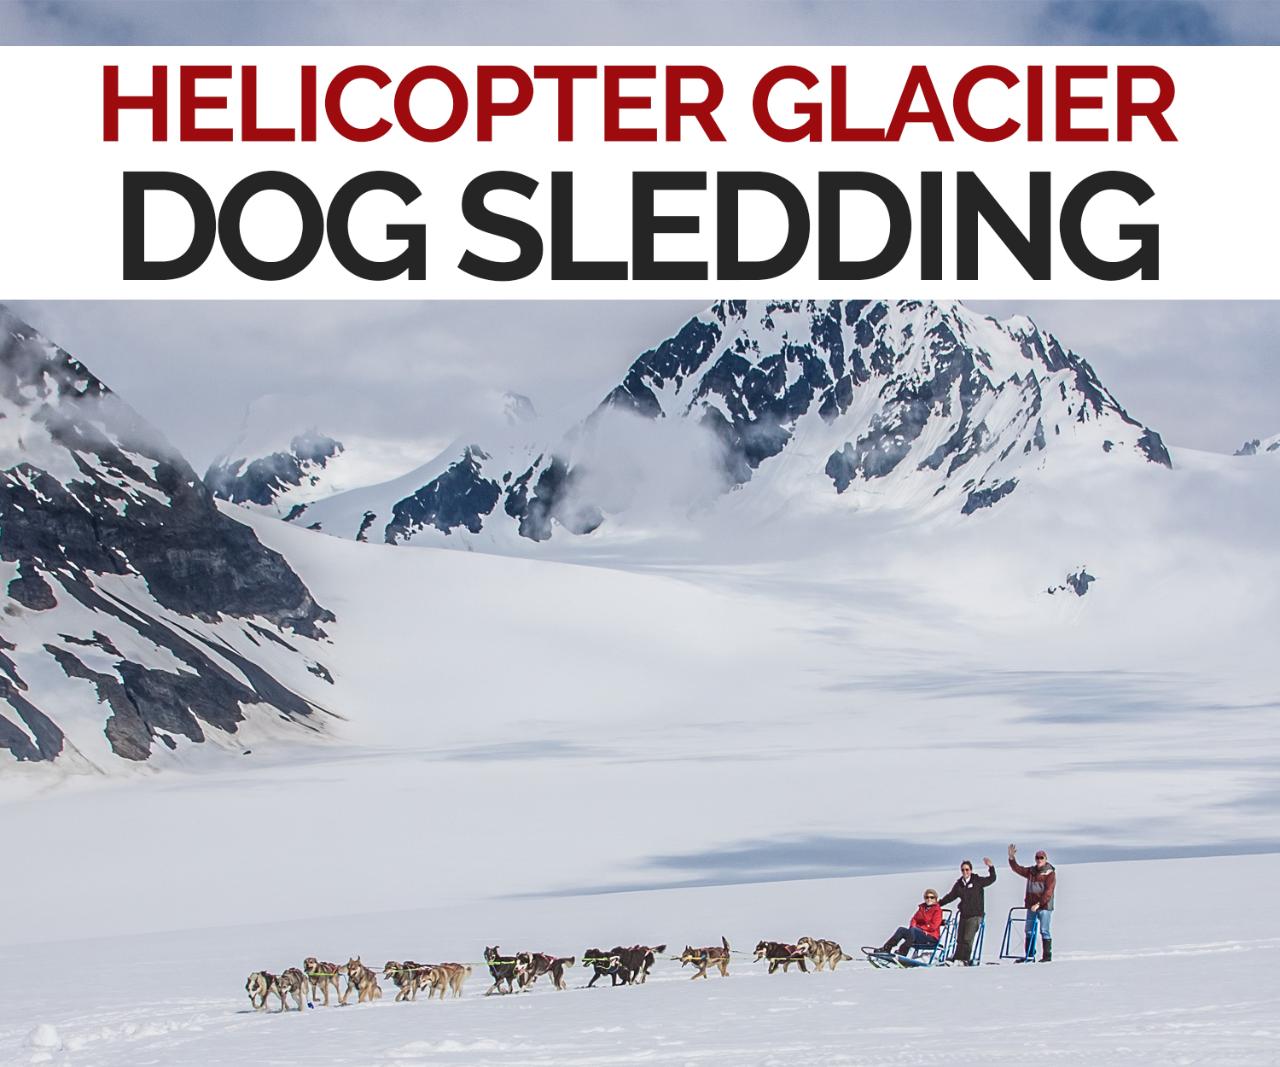 Helicopter Glacier Dog Sledding